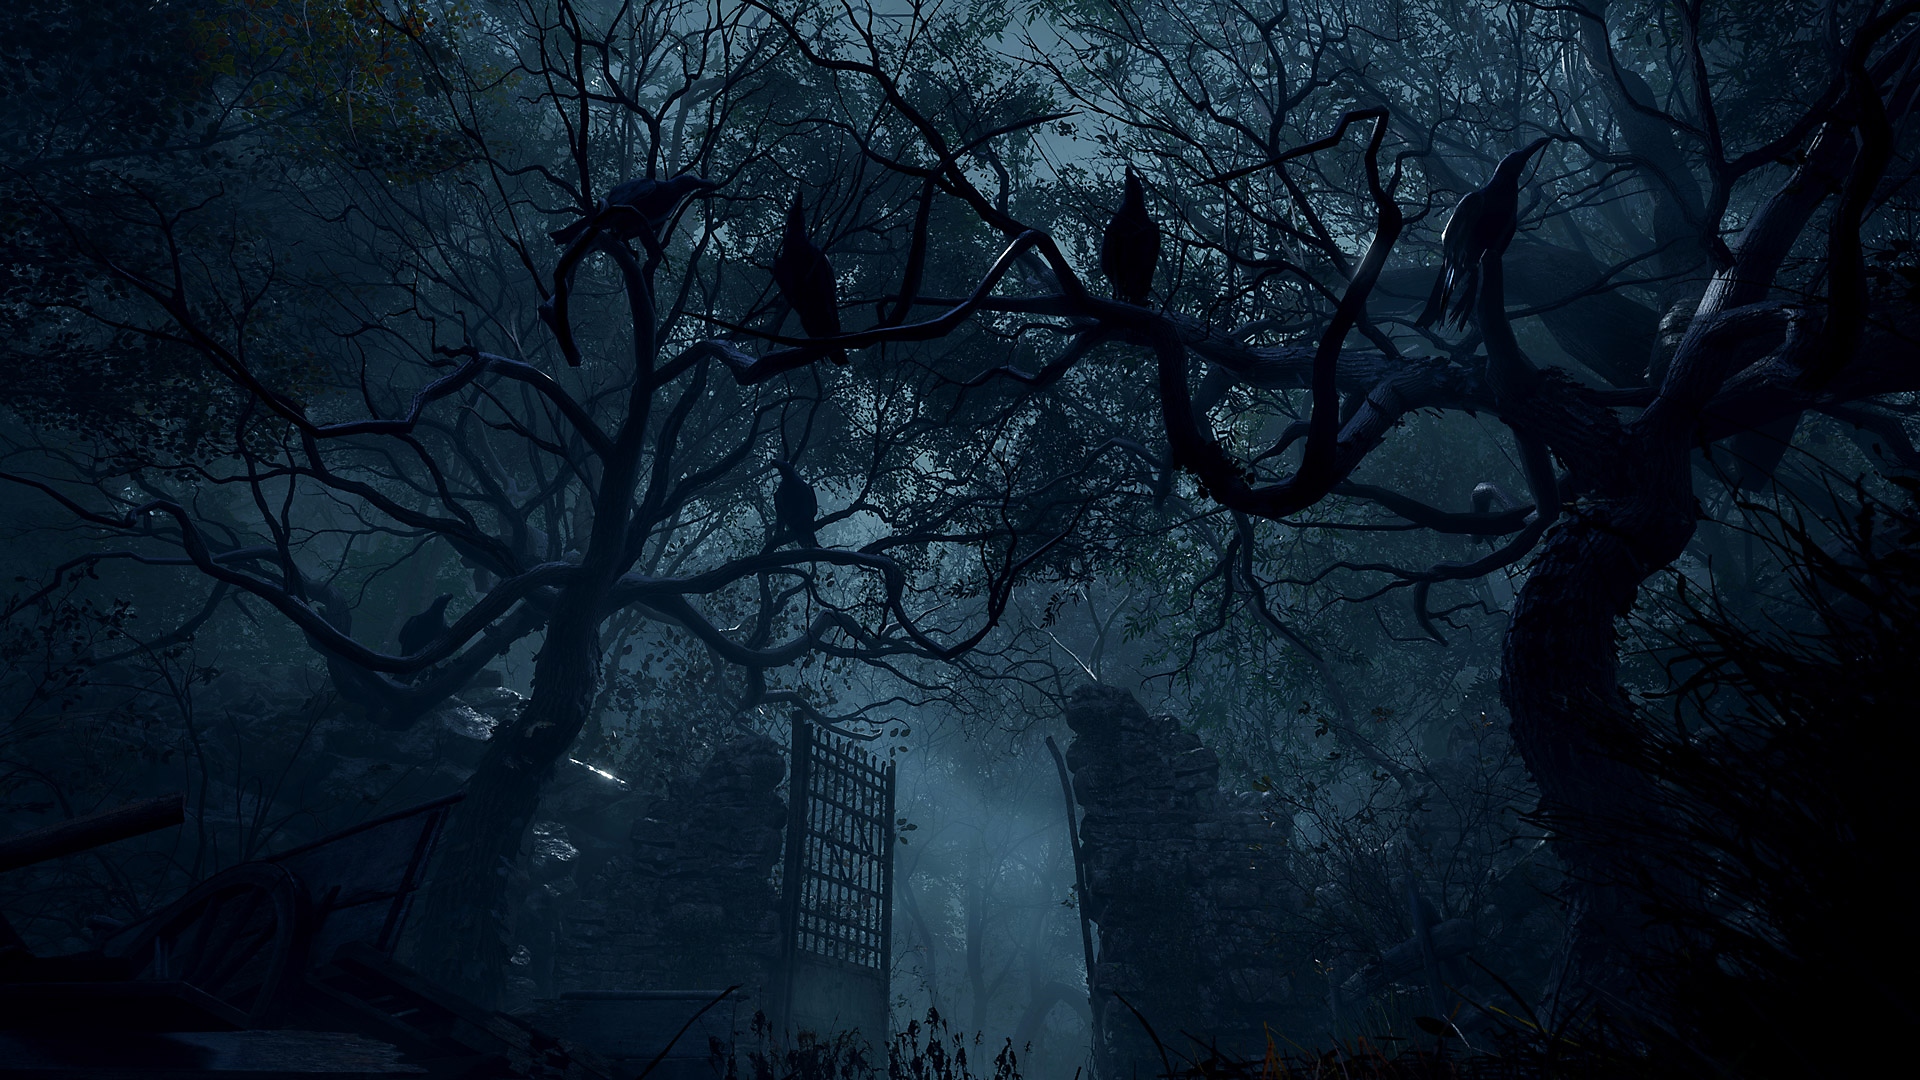 Resident Evil 4 - Capture d'écran montrant de grandes portes en pierre dans une zone boisée.